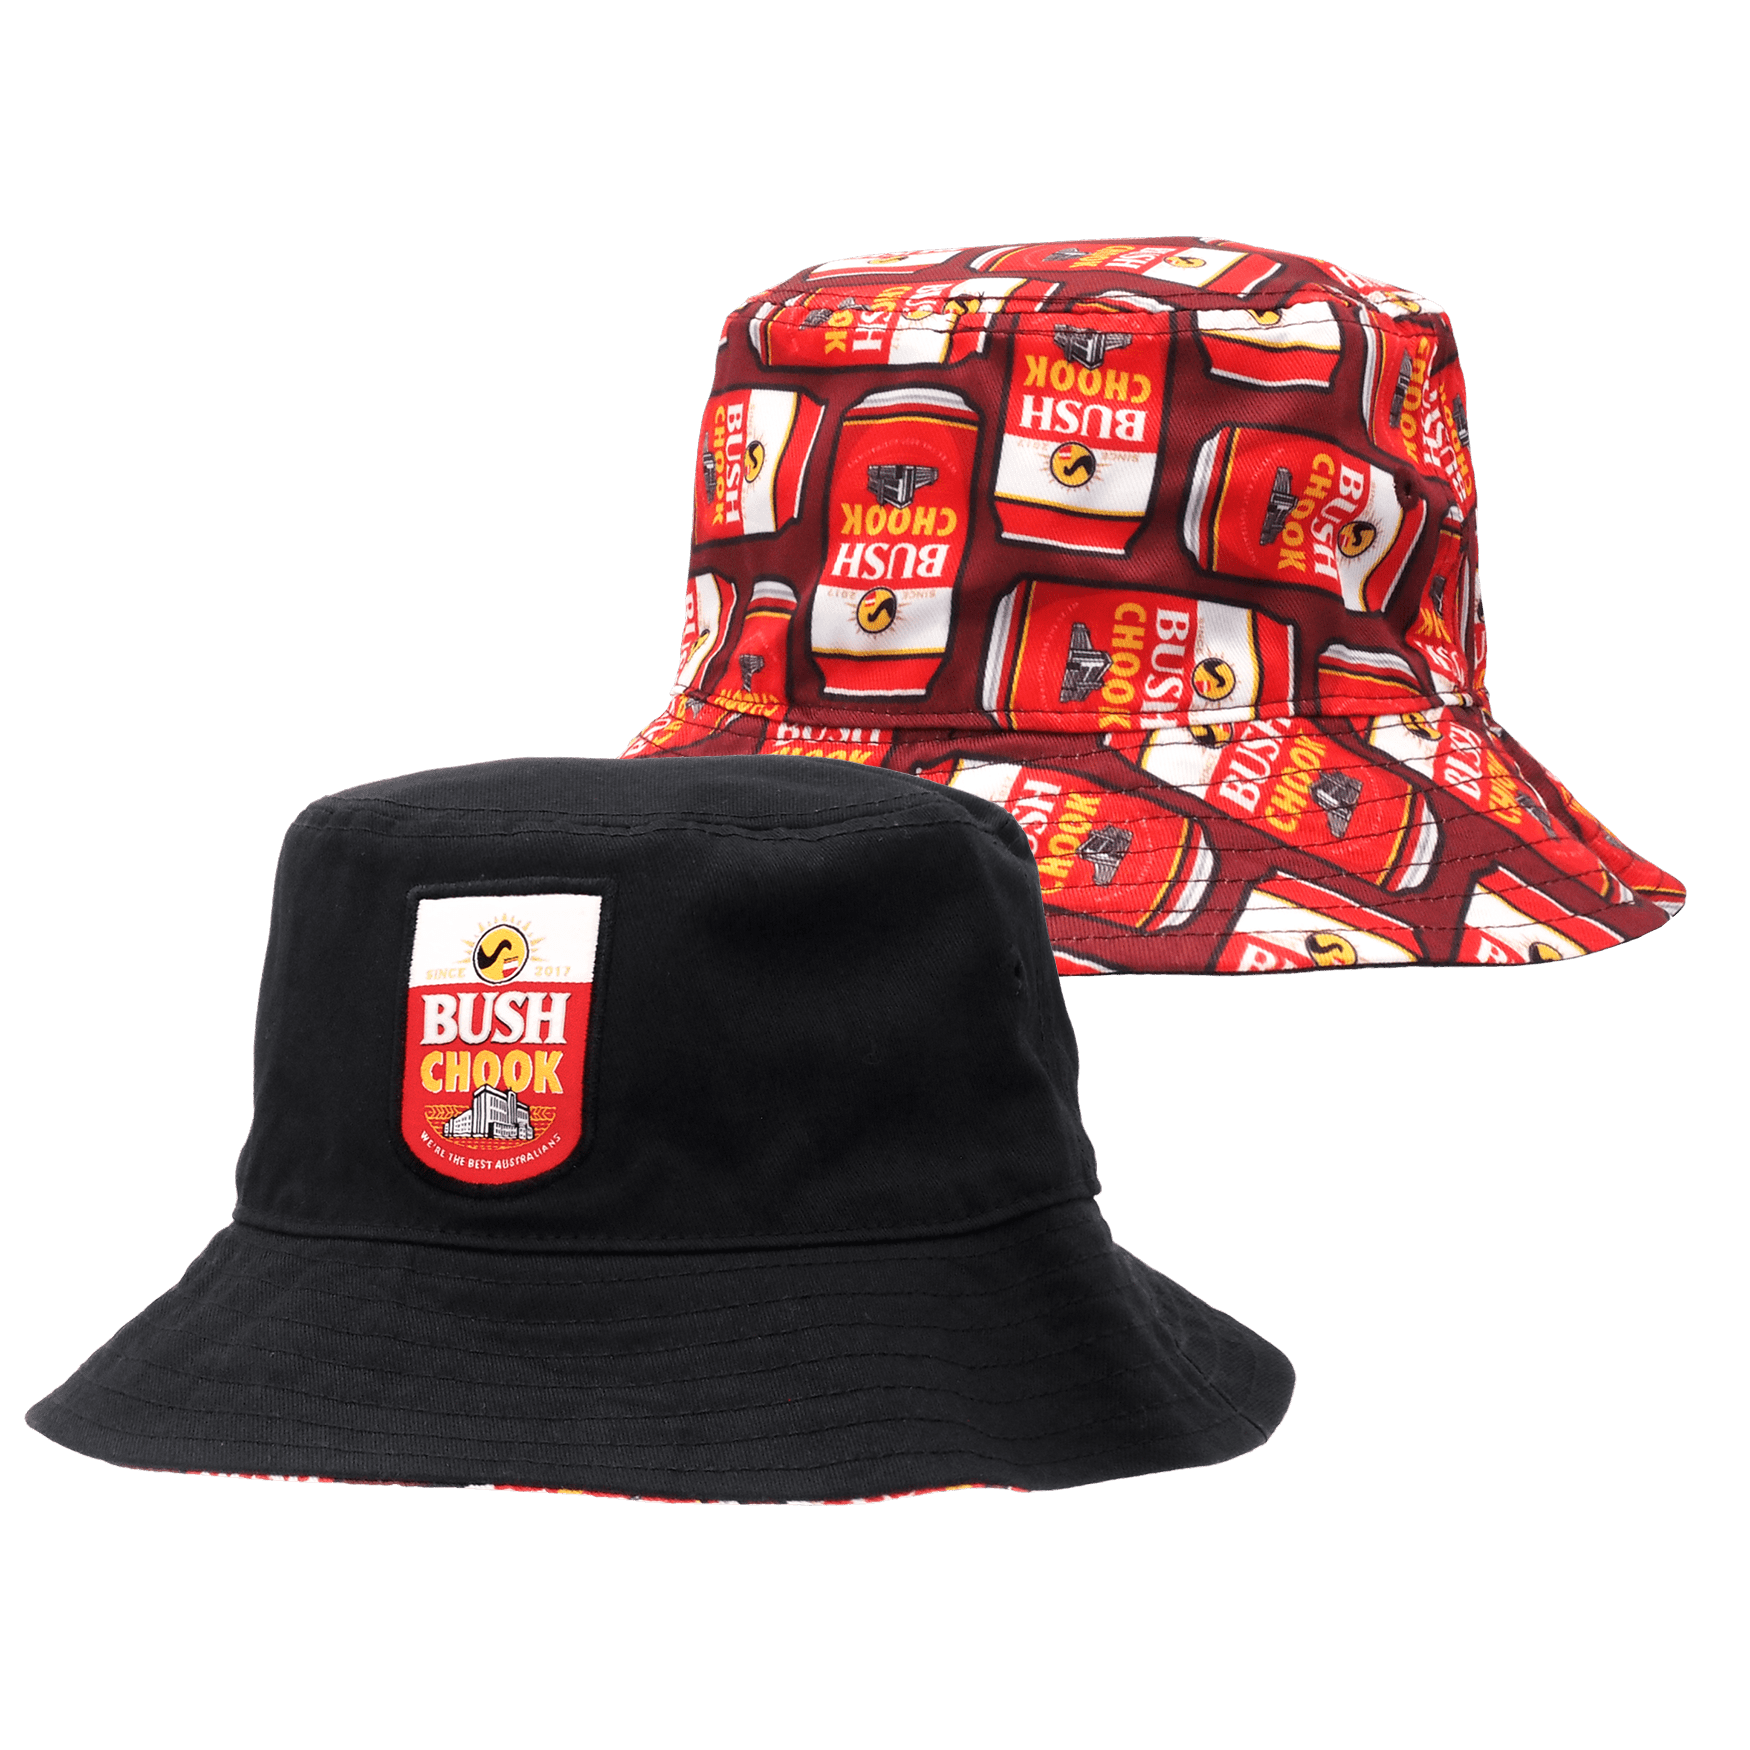 Canned Reversible Bucket Hat Hats Bush Chook